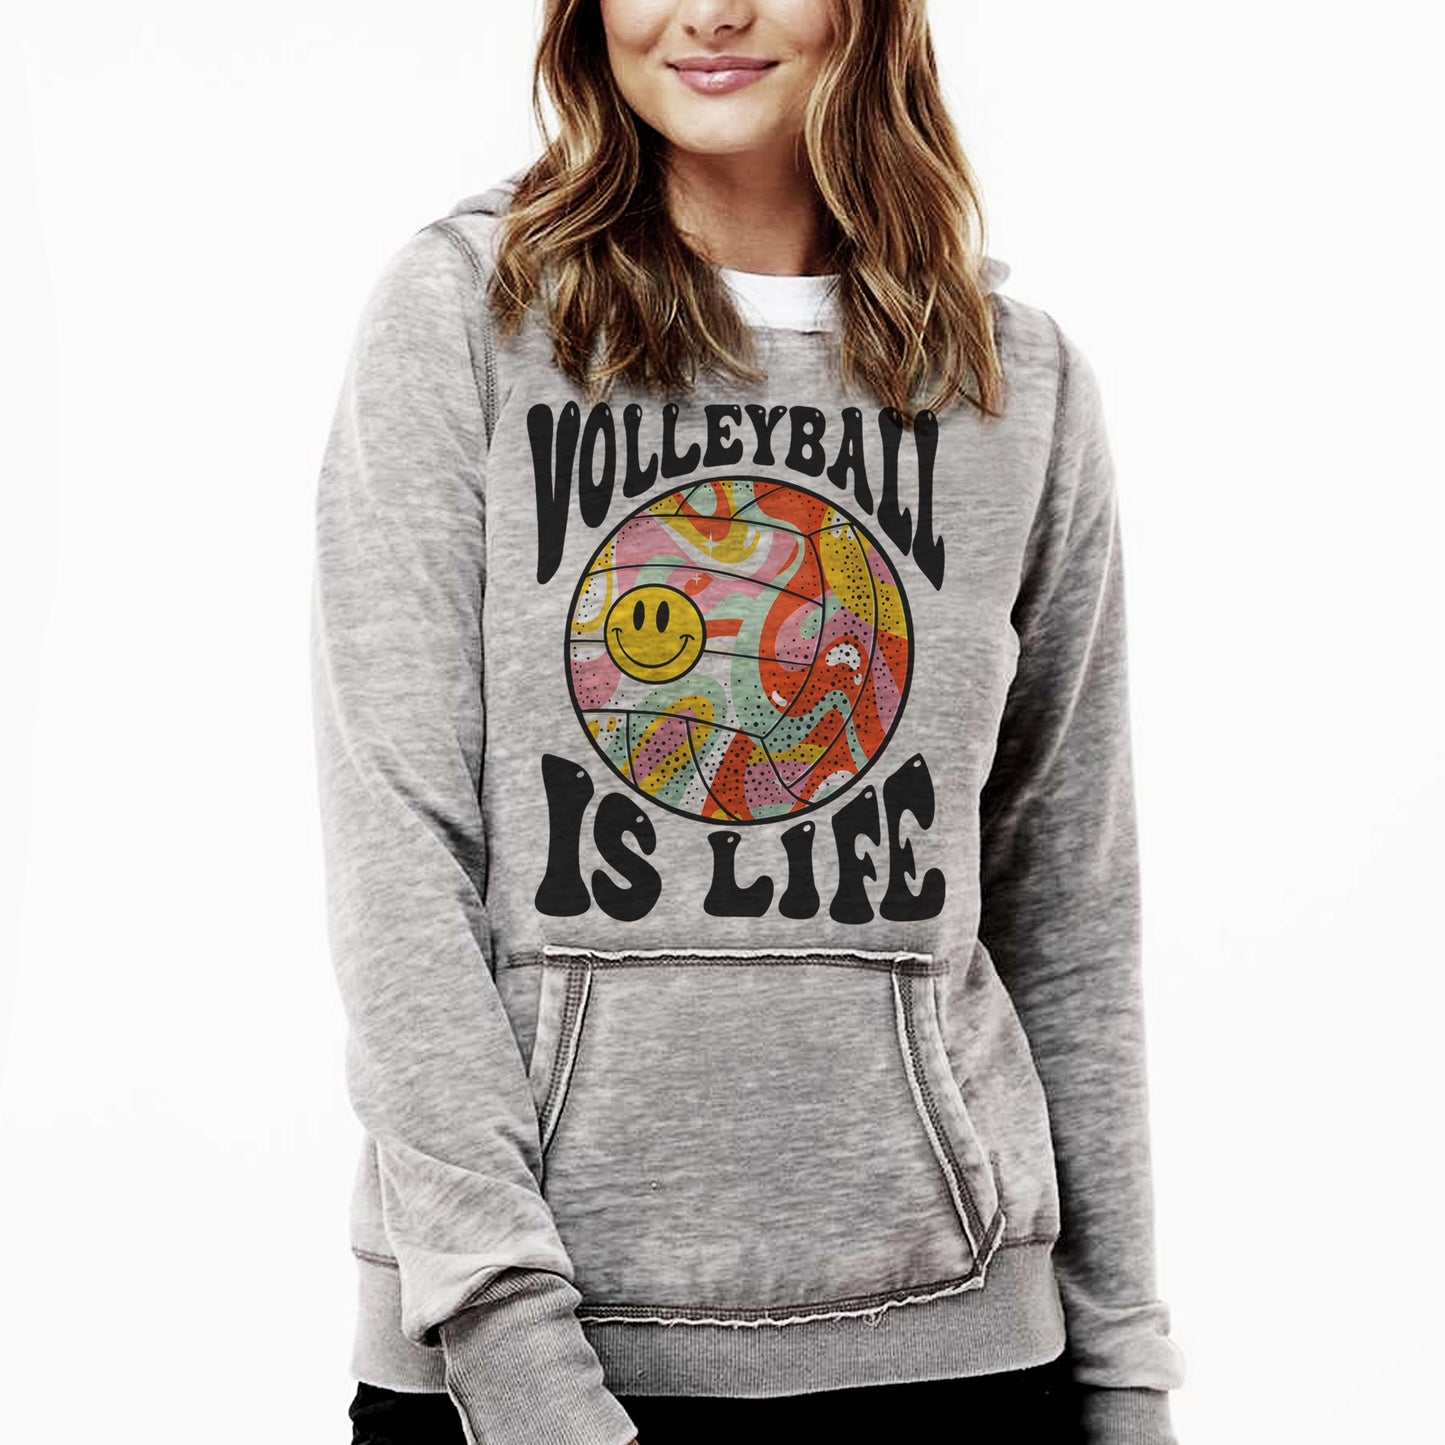 Volleyball is Life Sweatshirts